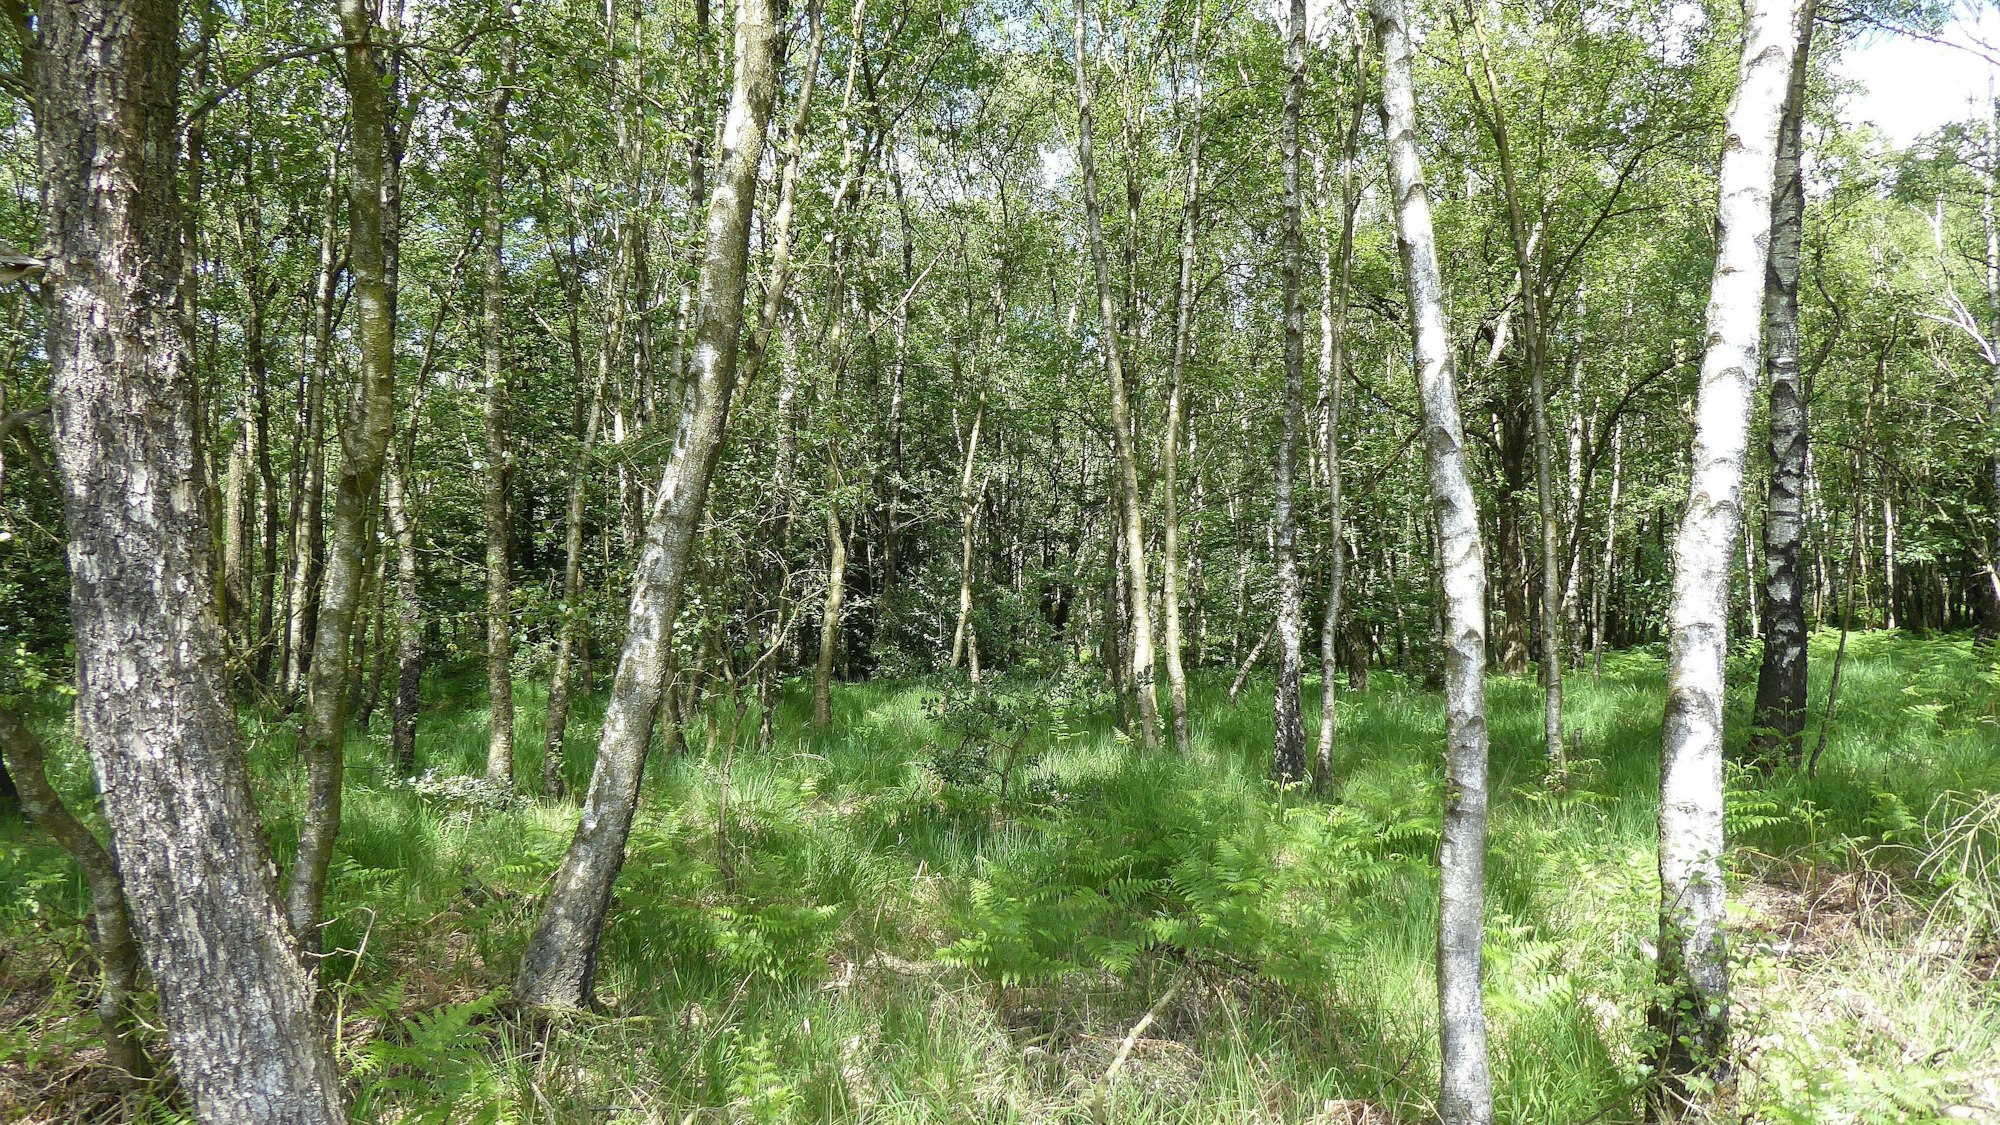 Moorbirken stehen in einem Wäldchen zwischen Gras.